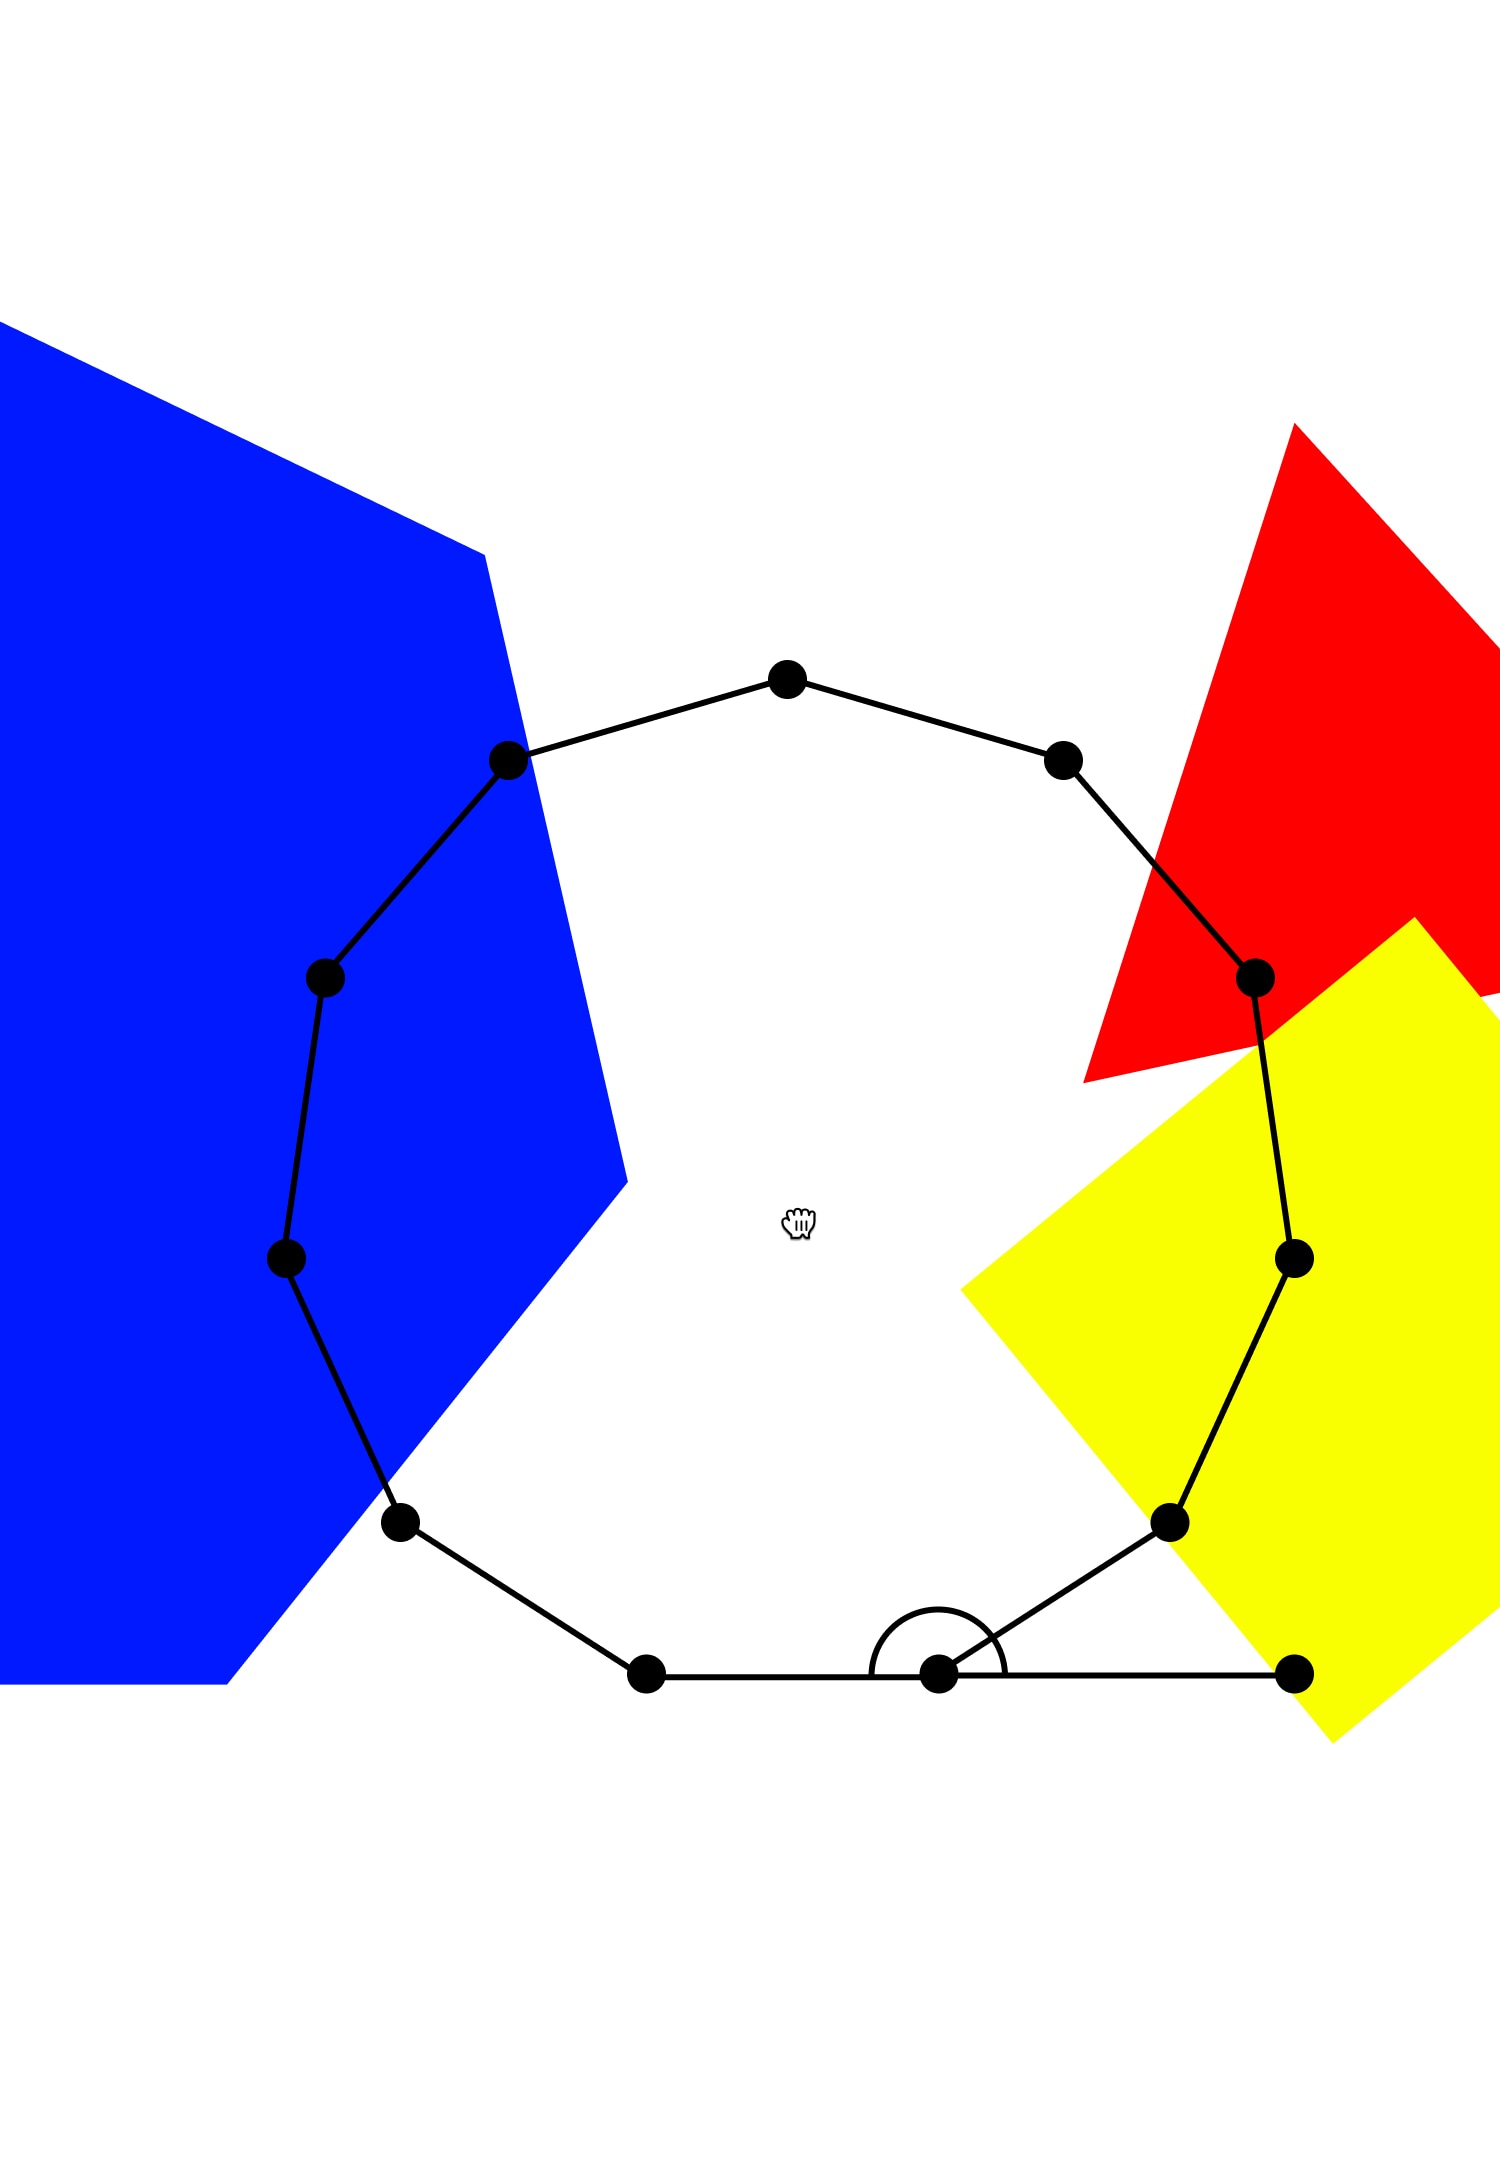 Polygon generator diagram